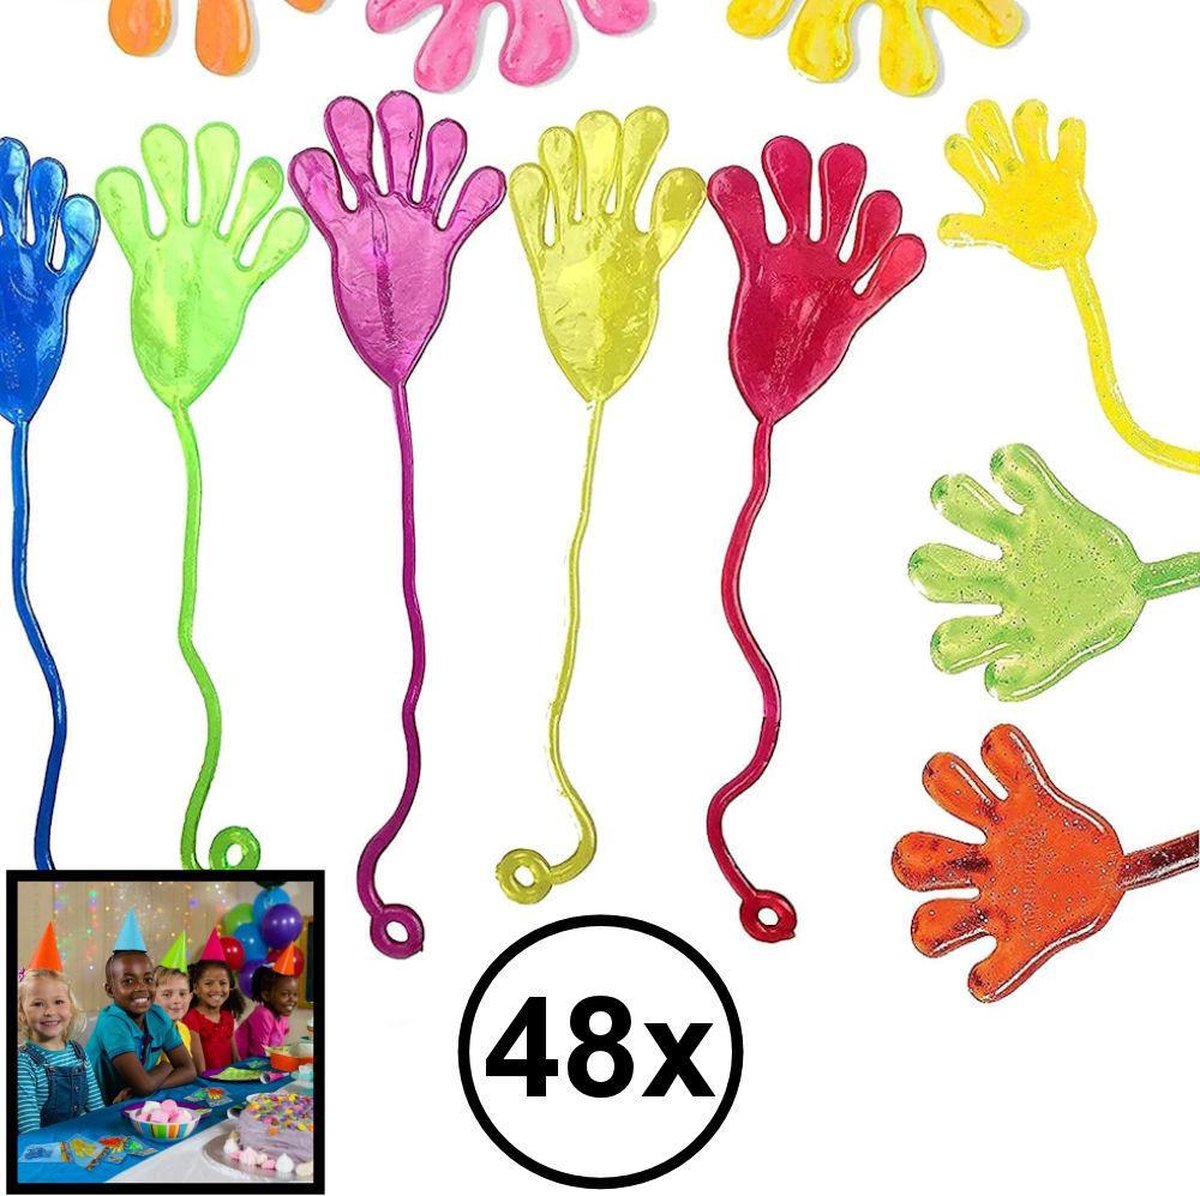 Decopatent® Uitdeelcadeaus 48 STUKS Plakhandjes - Sticky Hands - Traktatie Uitdeelcadeautjes voor kinderen - Speelgoed Traktaties